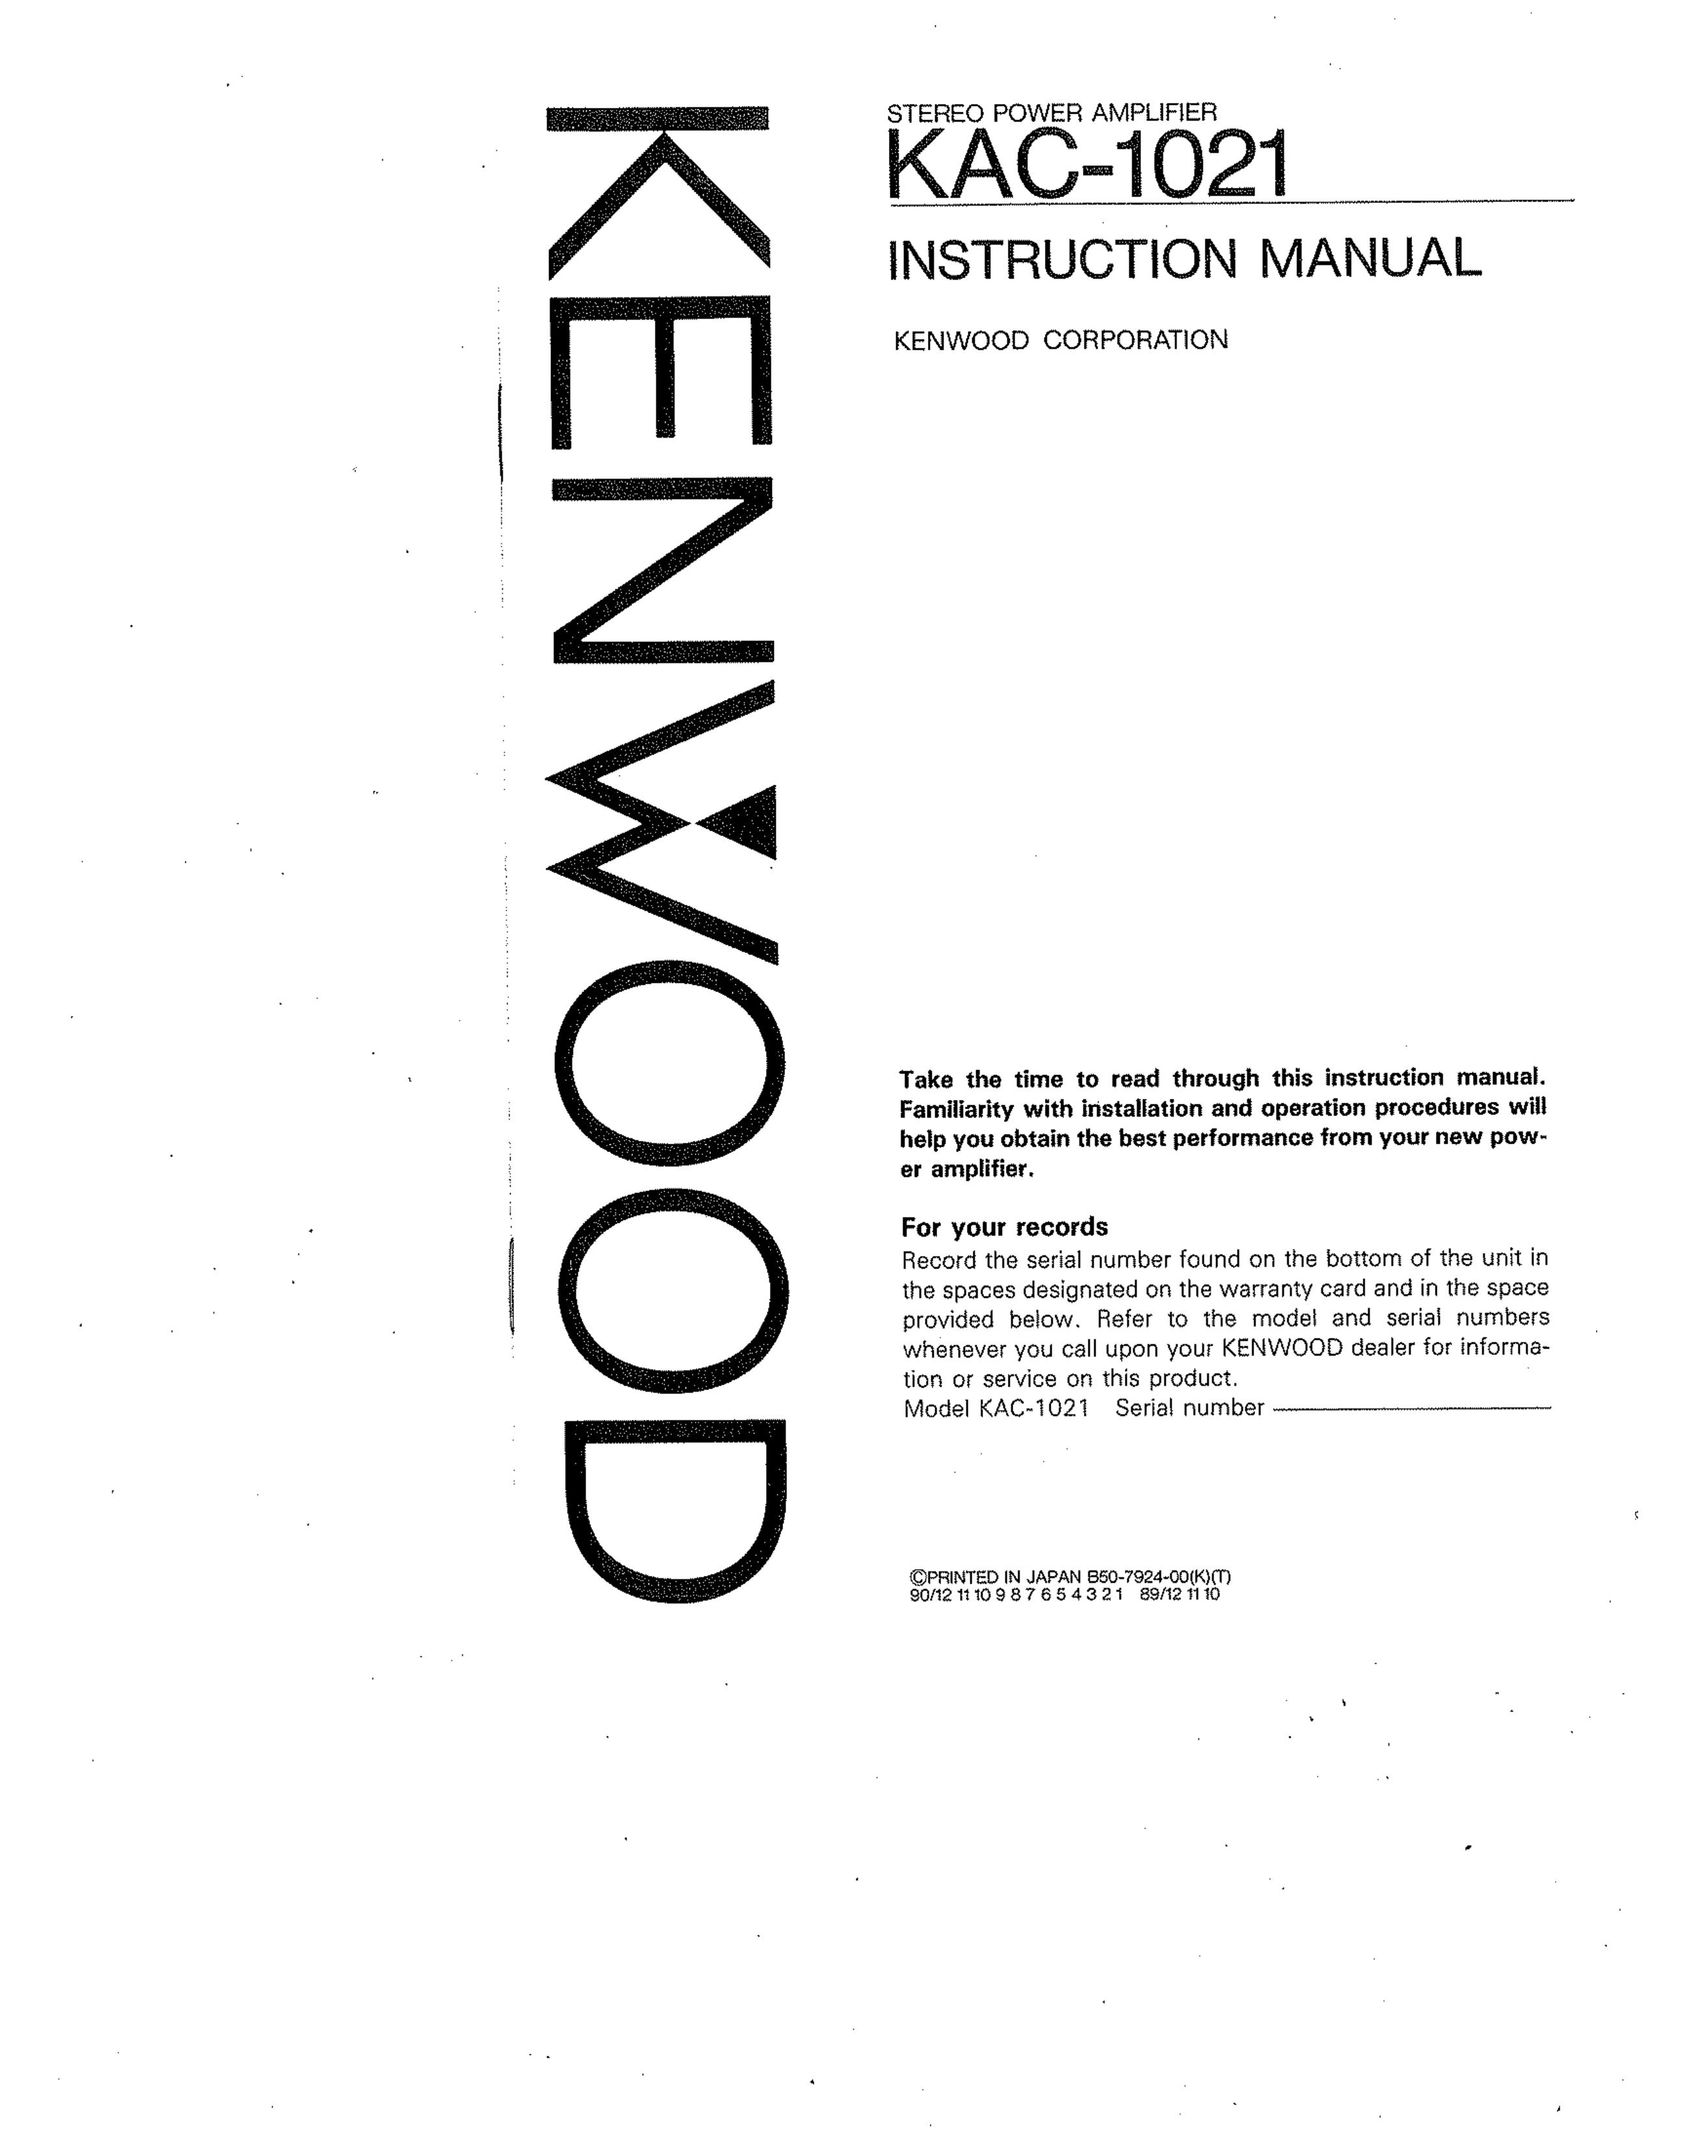 Kenwood KAC-1021 Stereo Amplifier User Manual